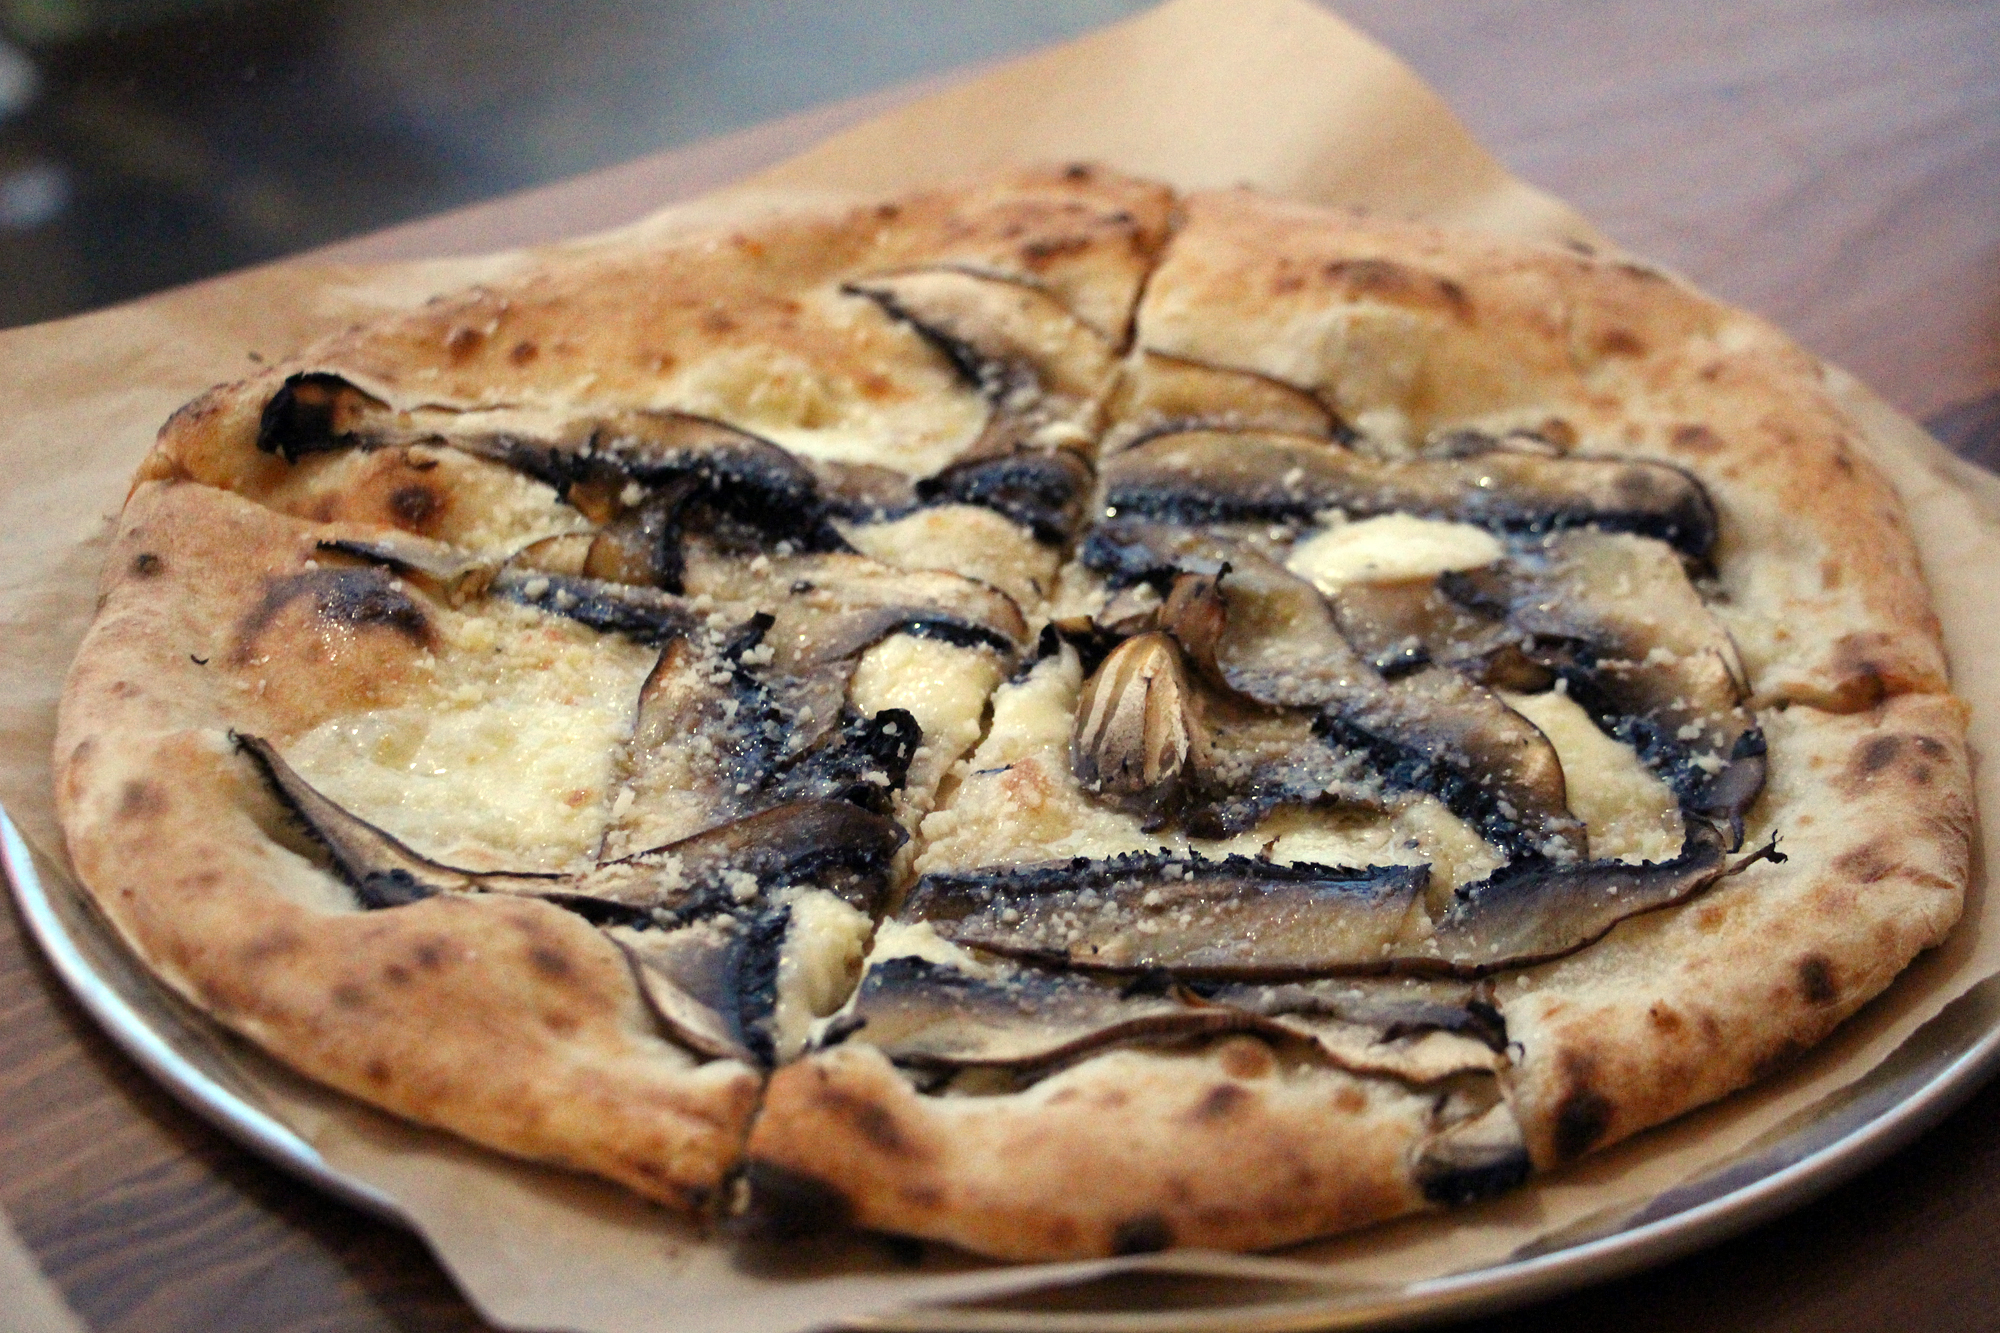 TKO pizza with Portobello mushrooms and truffle oil.